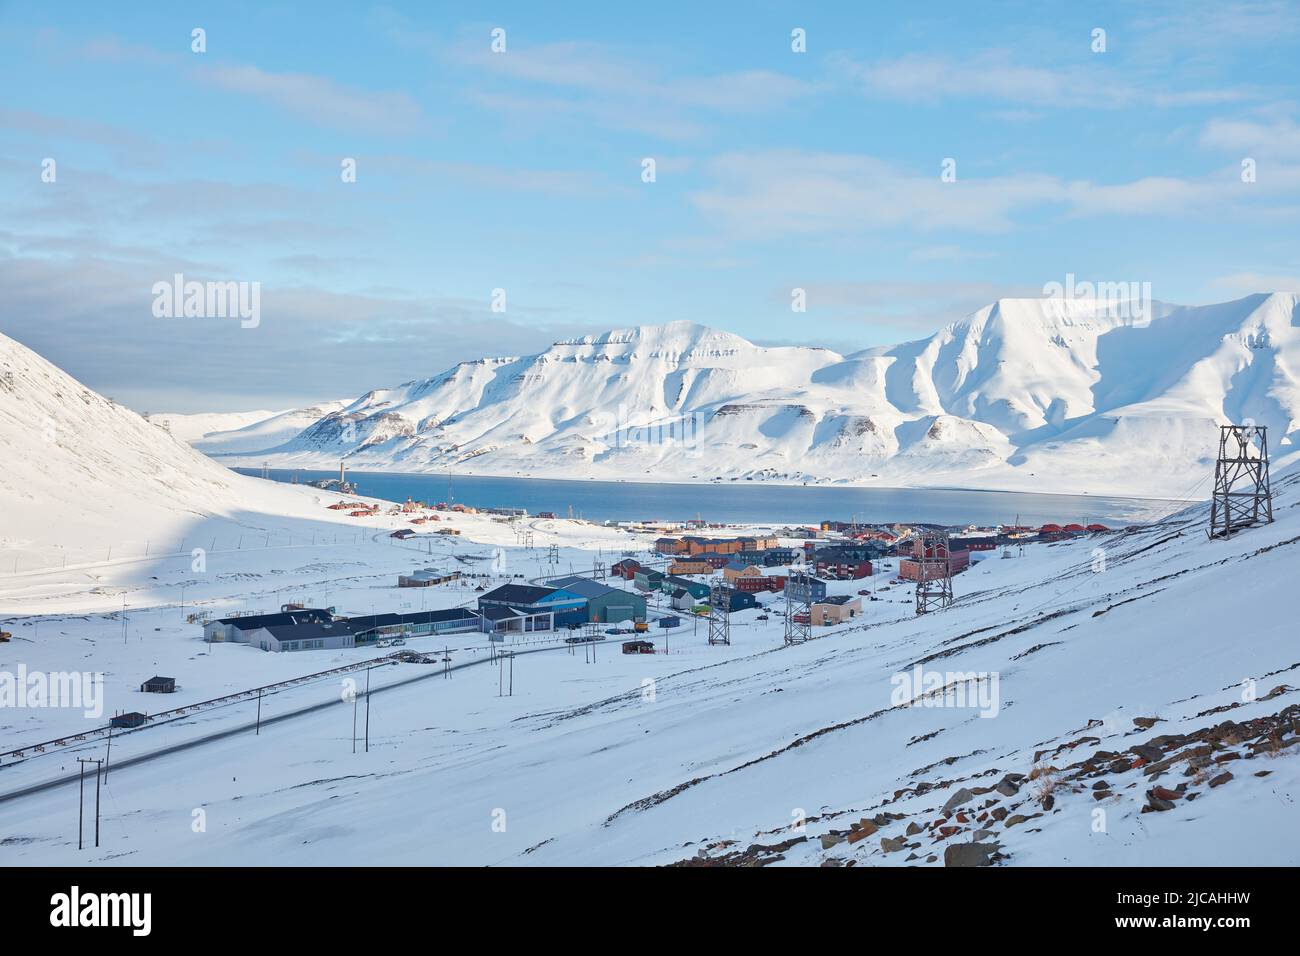 Vue d'ensemble des maisons colorées de Longyearbyen, placées au bord de la mer entre les hautes montagnes enneigées, donnent un ciel bleu clair Banque D'Images